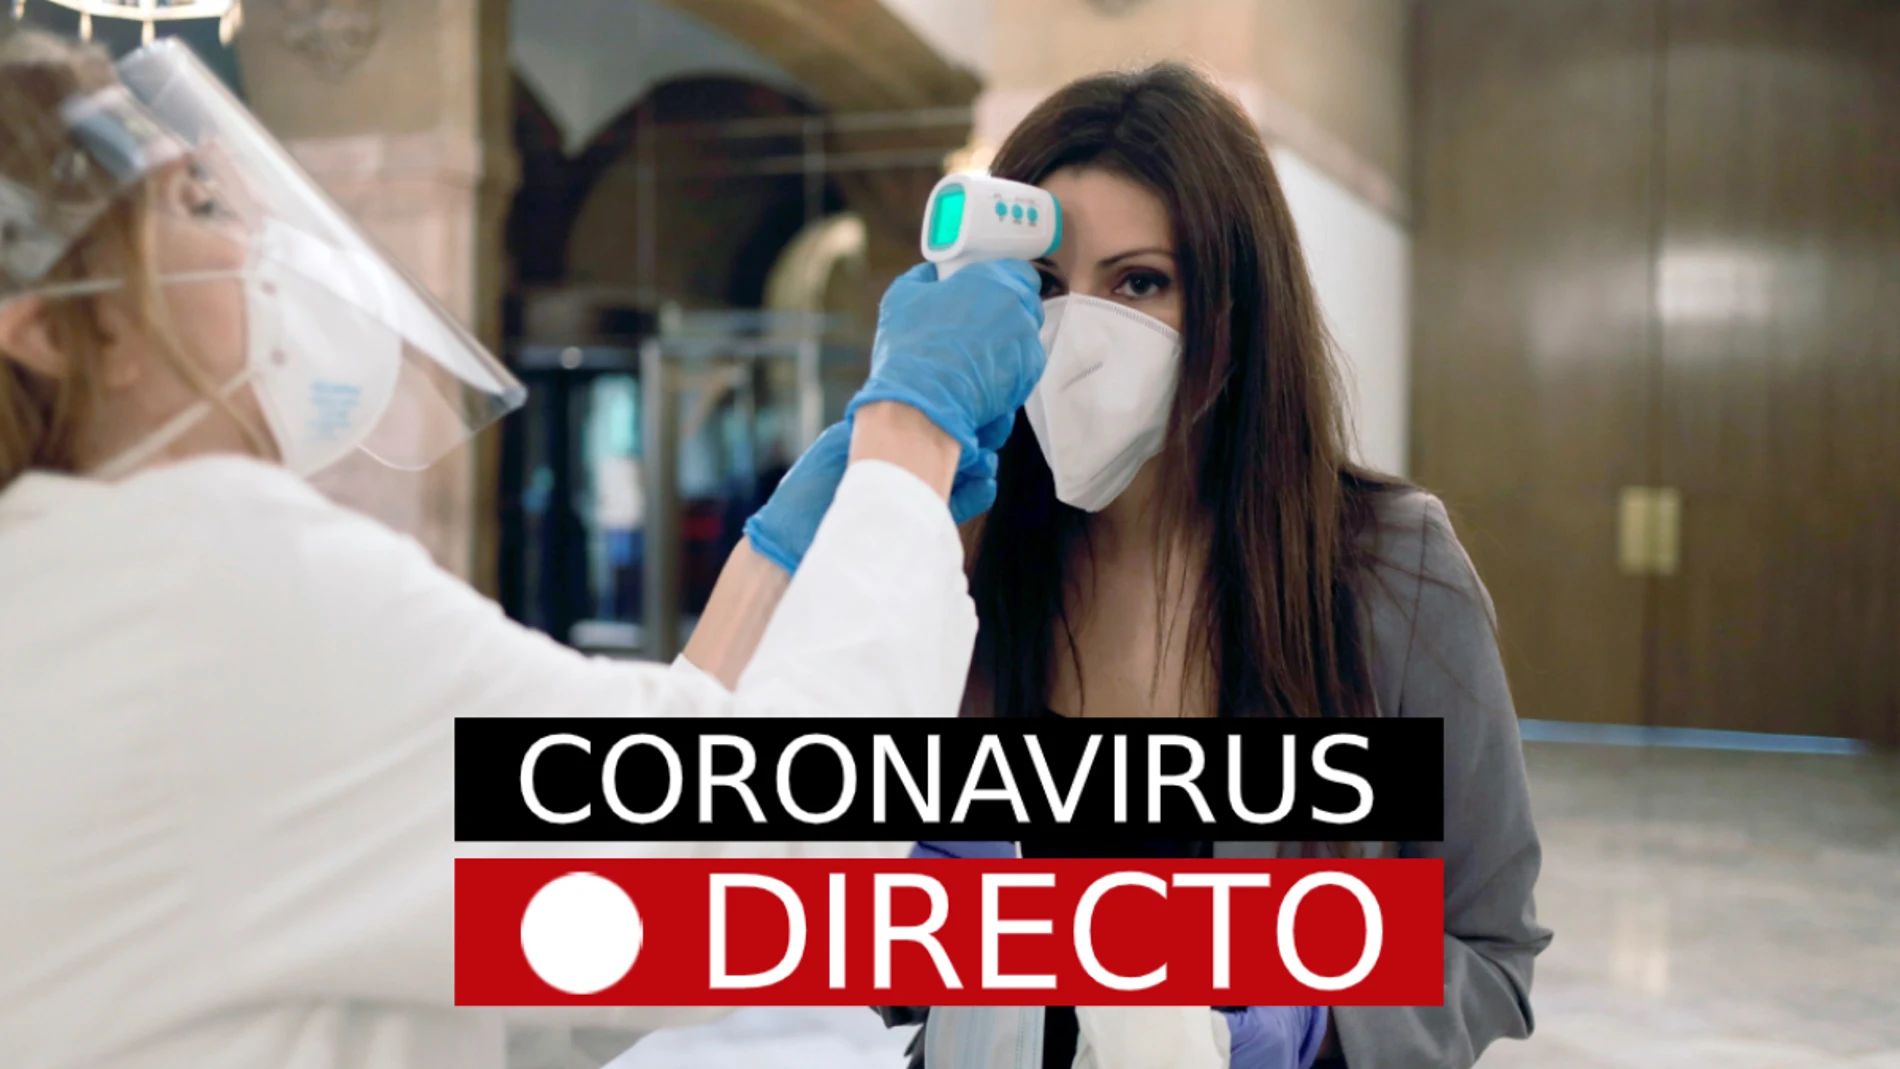 La desescalada del coronavirus en España y noticias de hoy de última hora, en directo